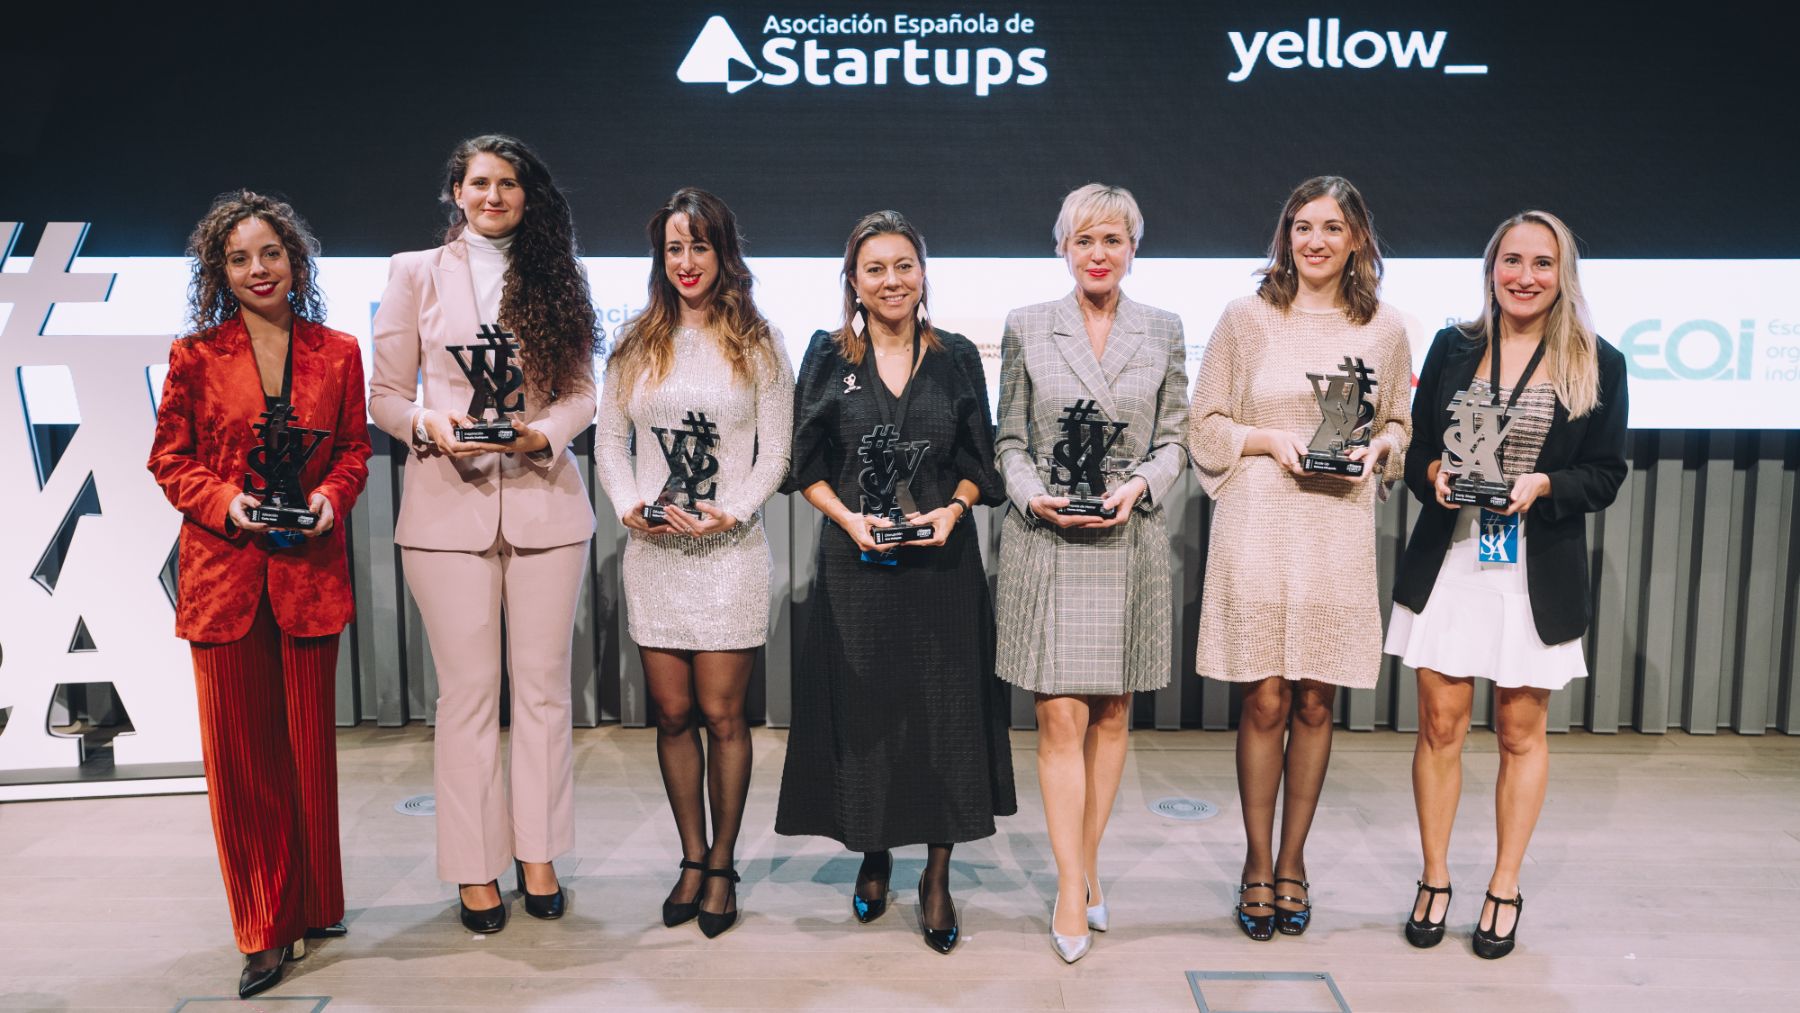 Organizados por la Asociación Española de Startups, los Women Startup Awards buscan visibilizar a las mujeres emprendedoras, reconocer sus logros y servir de inspiración a nuevos talentos